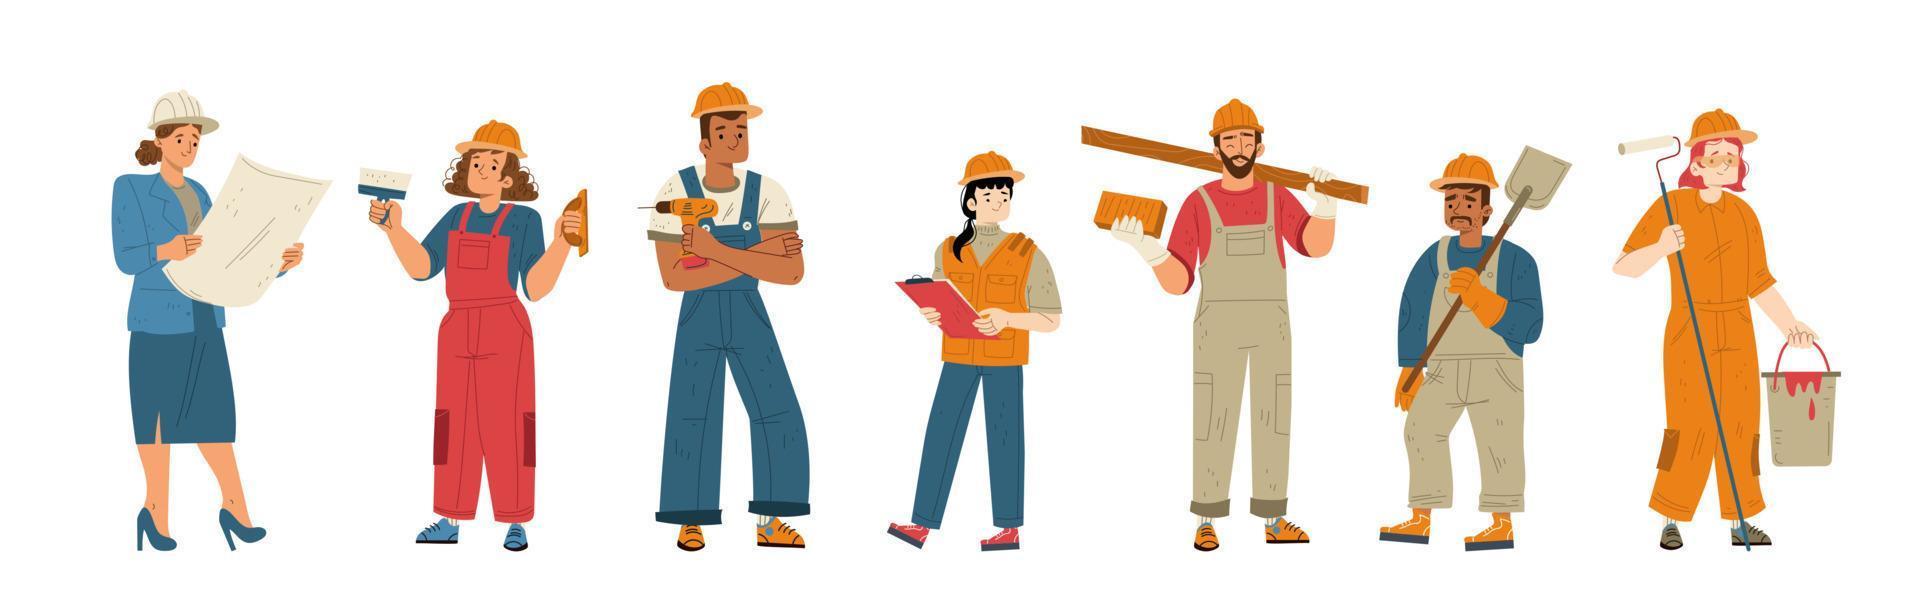 construtores e trabalhadores da construção civil em capacetes vetor